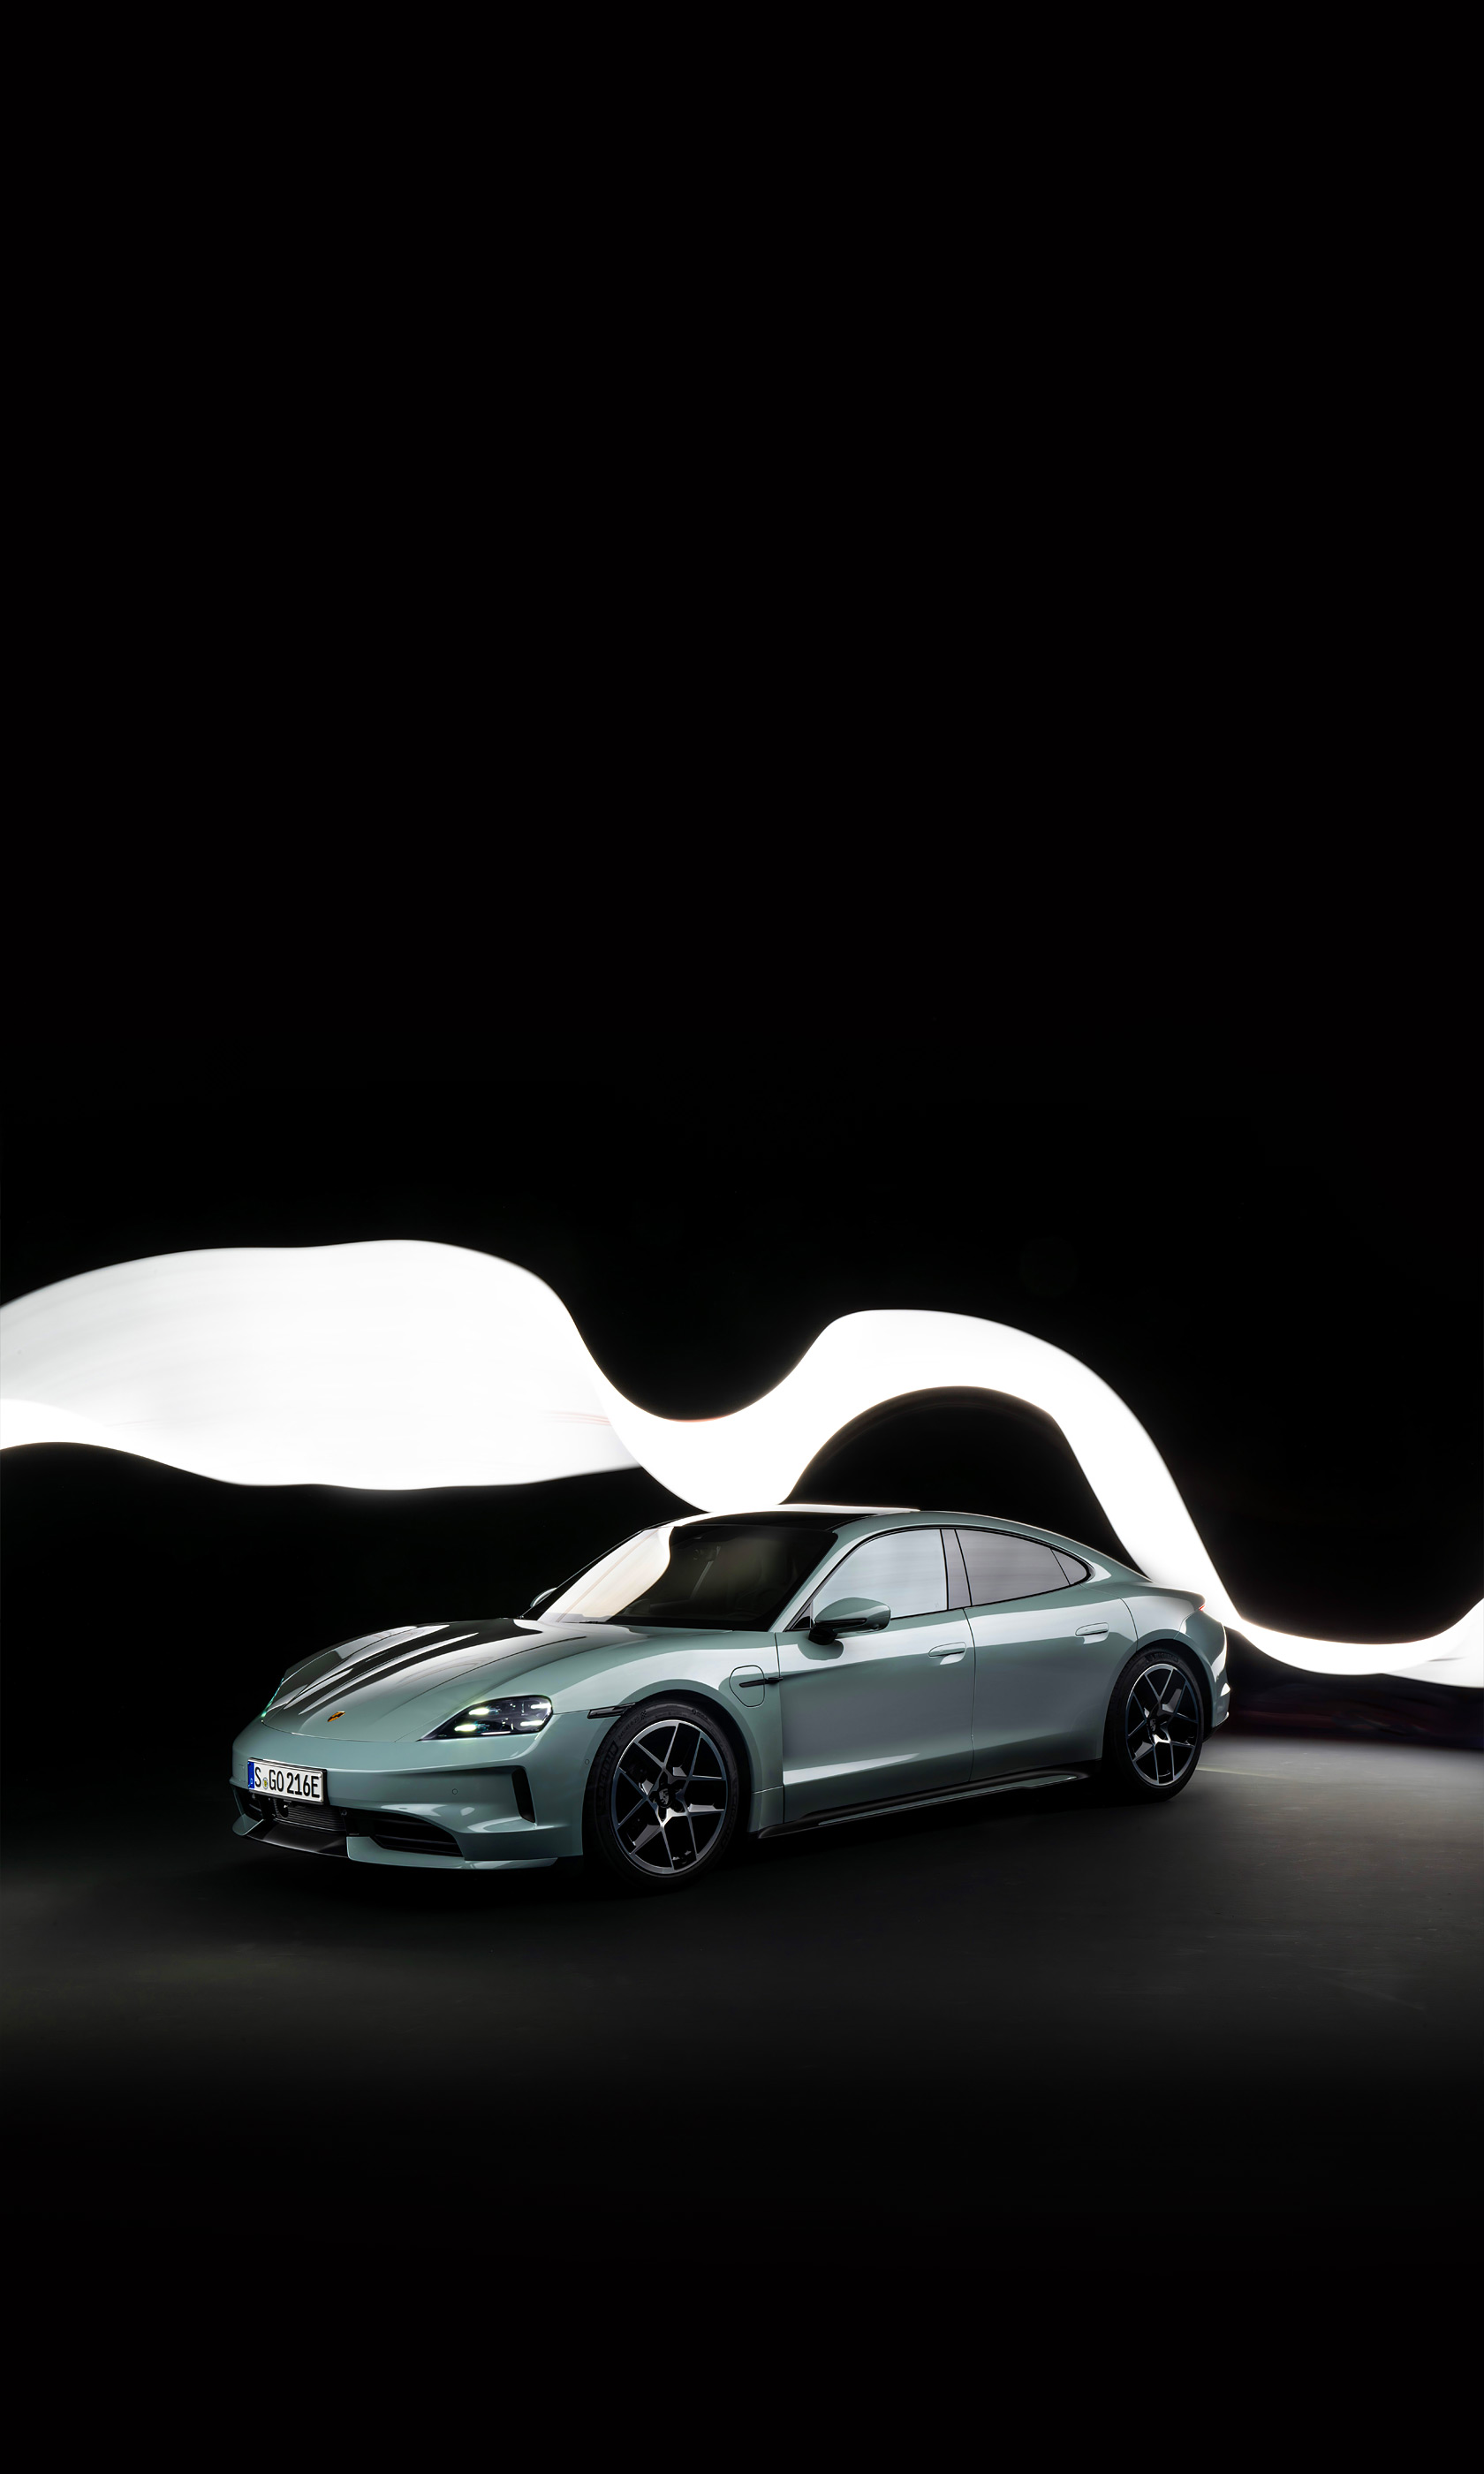  2025 Porsche Taycan Wallpaper.